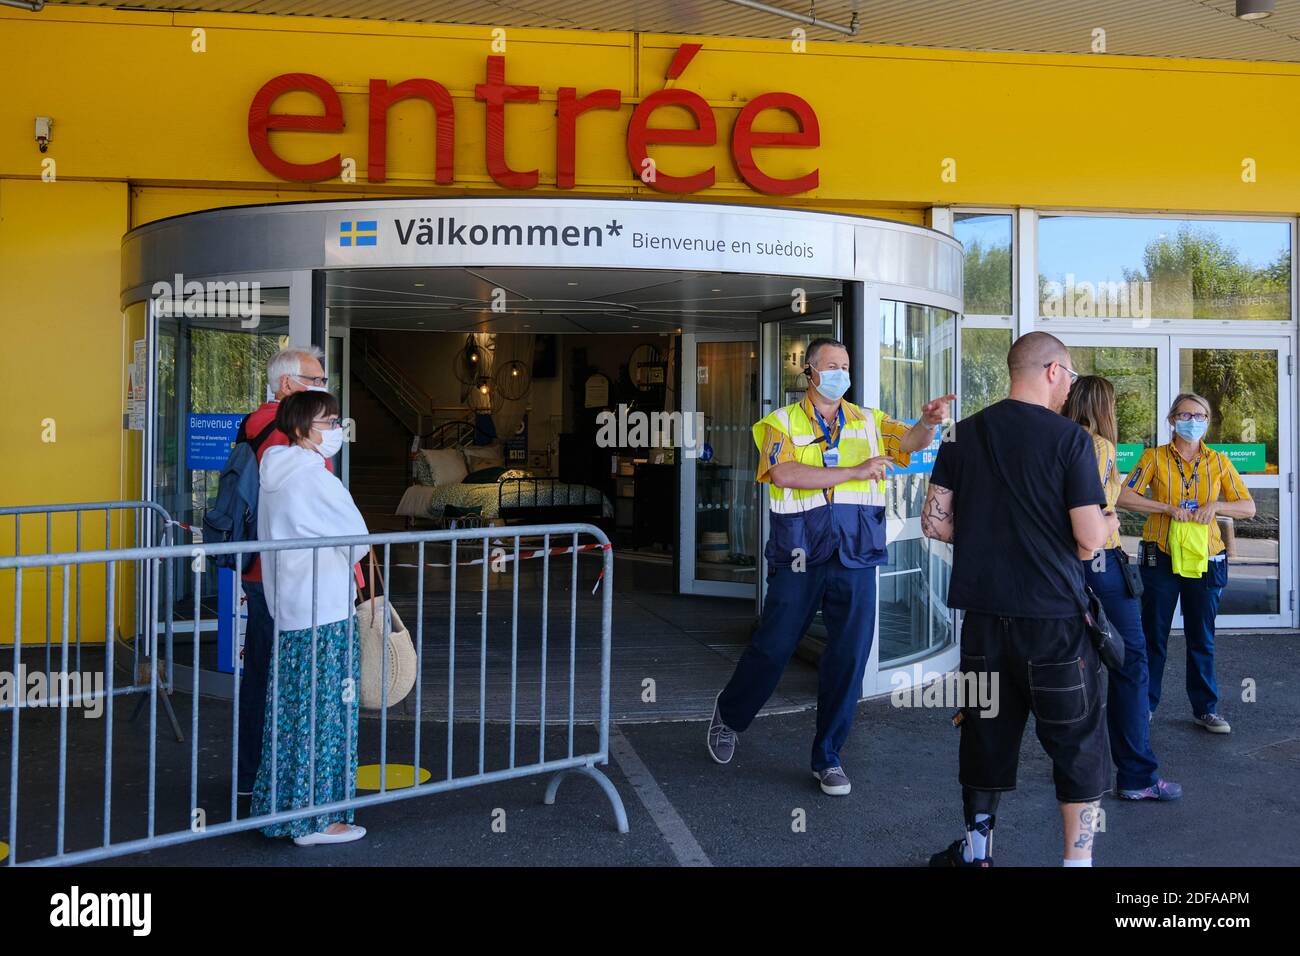 Chiuso dall'inizio del contenimento, il marchio internazionale IKEA ha  riaperto il suo negozio a Tolosa (Francia) il 25 maggio 2020. Molti clienti  si sono riuniti 1 ora prima dell'apertura per accedere all'area